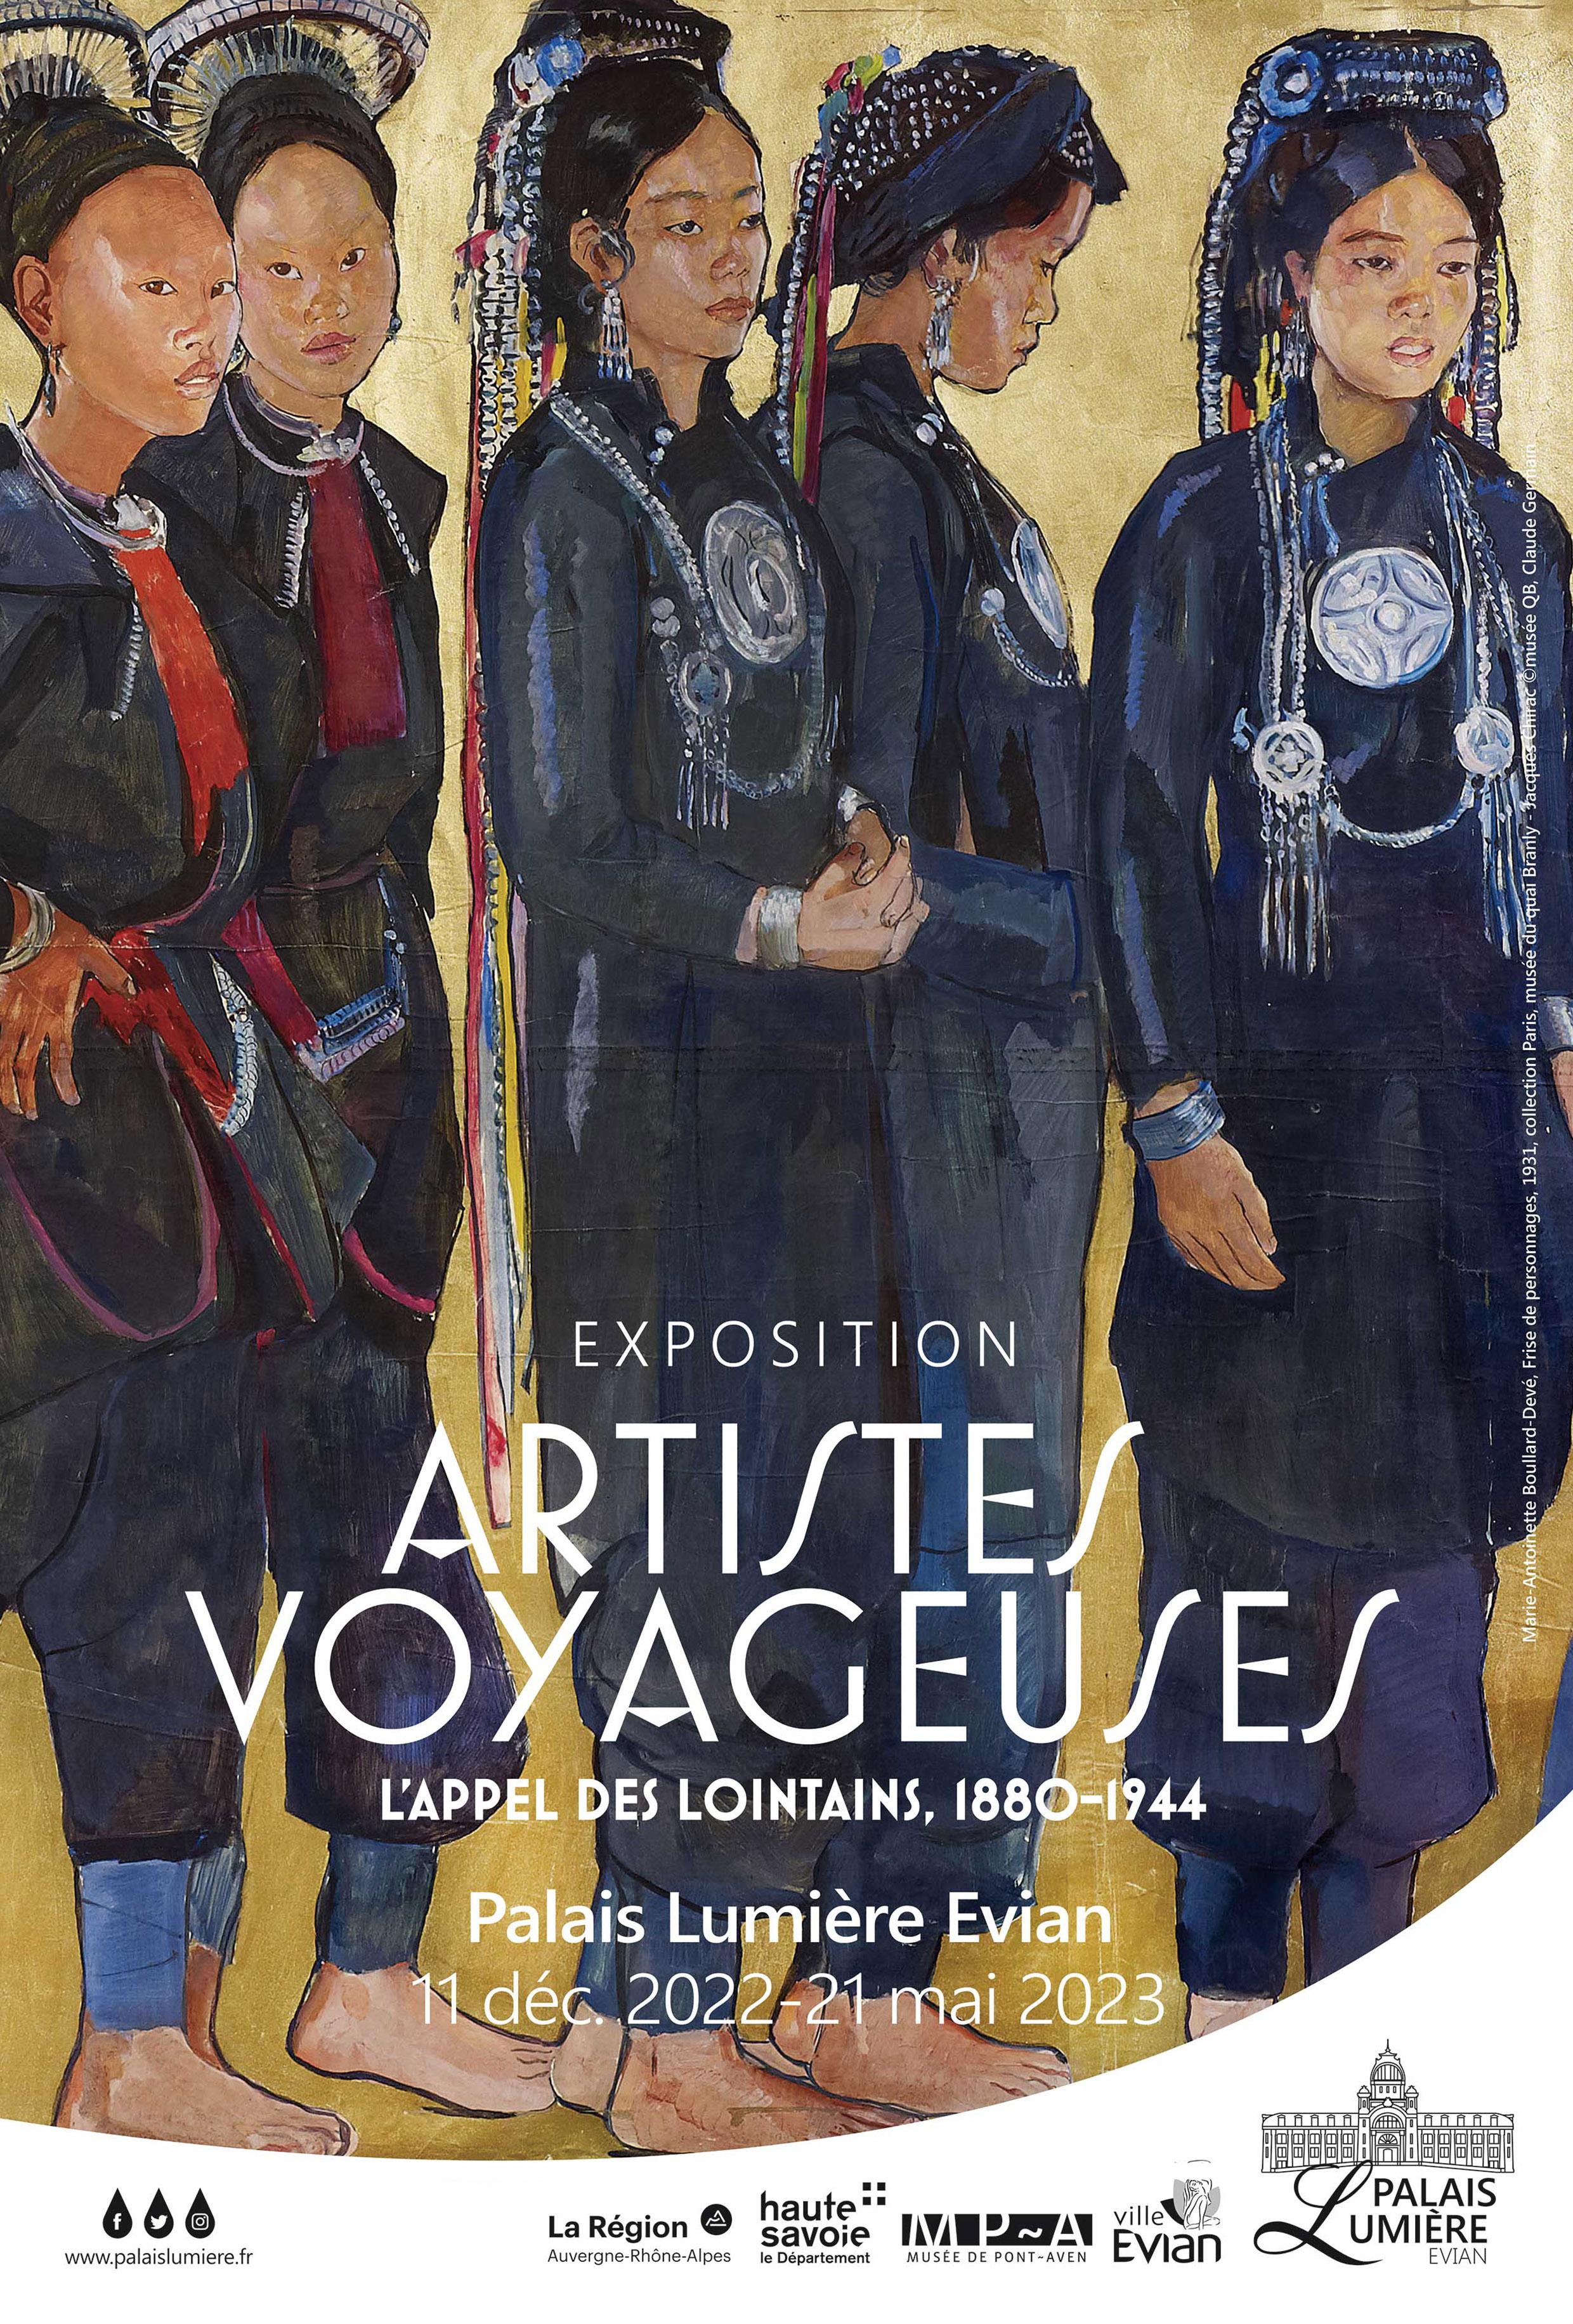 Affiche de l'exposition "Artistes voyageuses" au Palais Lumière, à Evian.